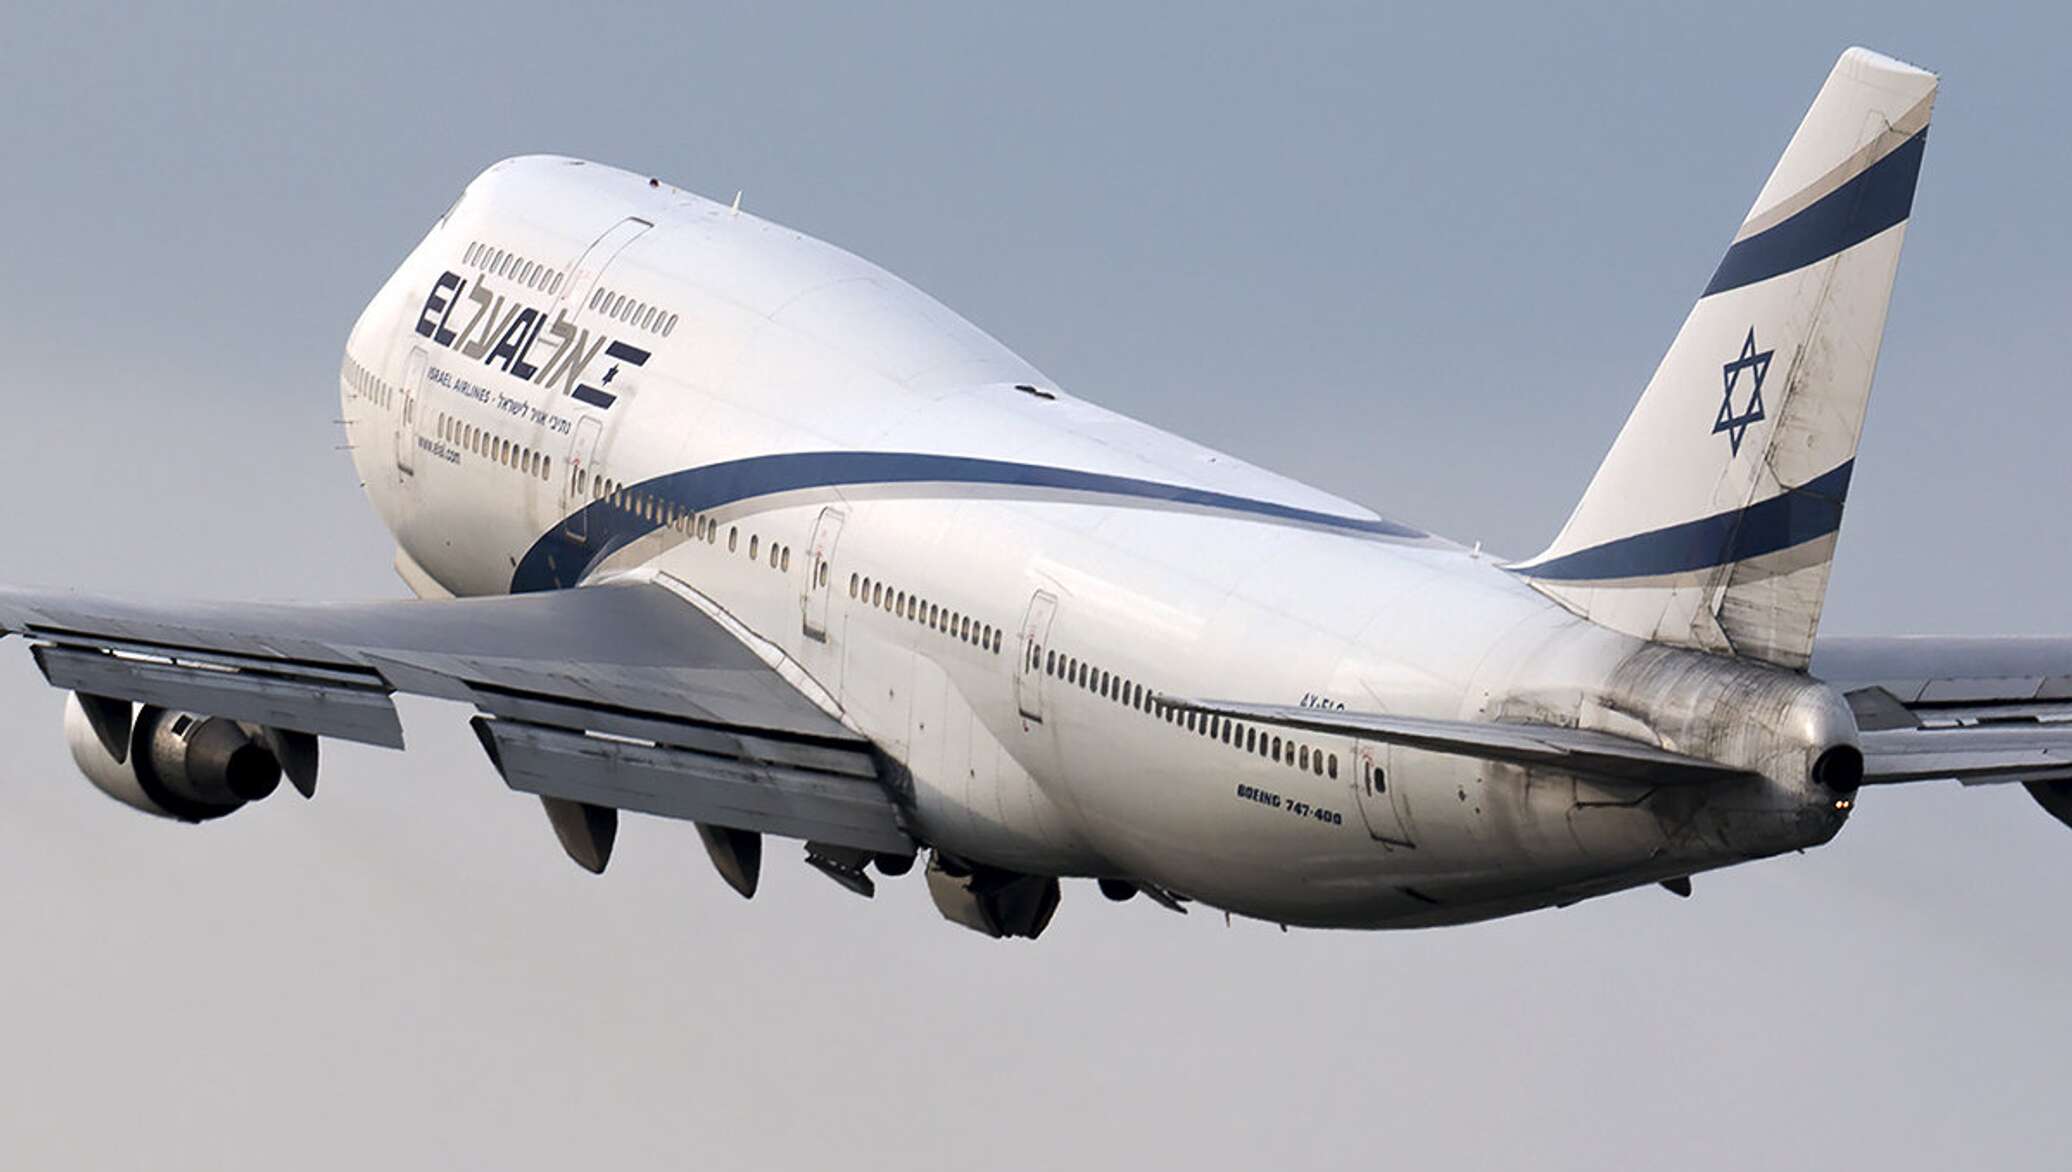 El al israel. Авиакомпания Израиля Эль Аль. Грузовой самолет Боинг 747. Боинг 747 800.